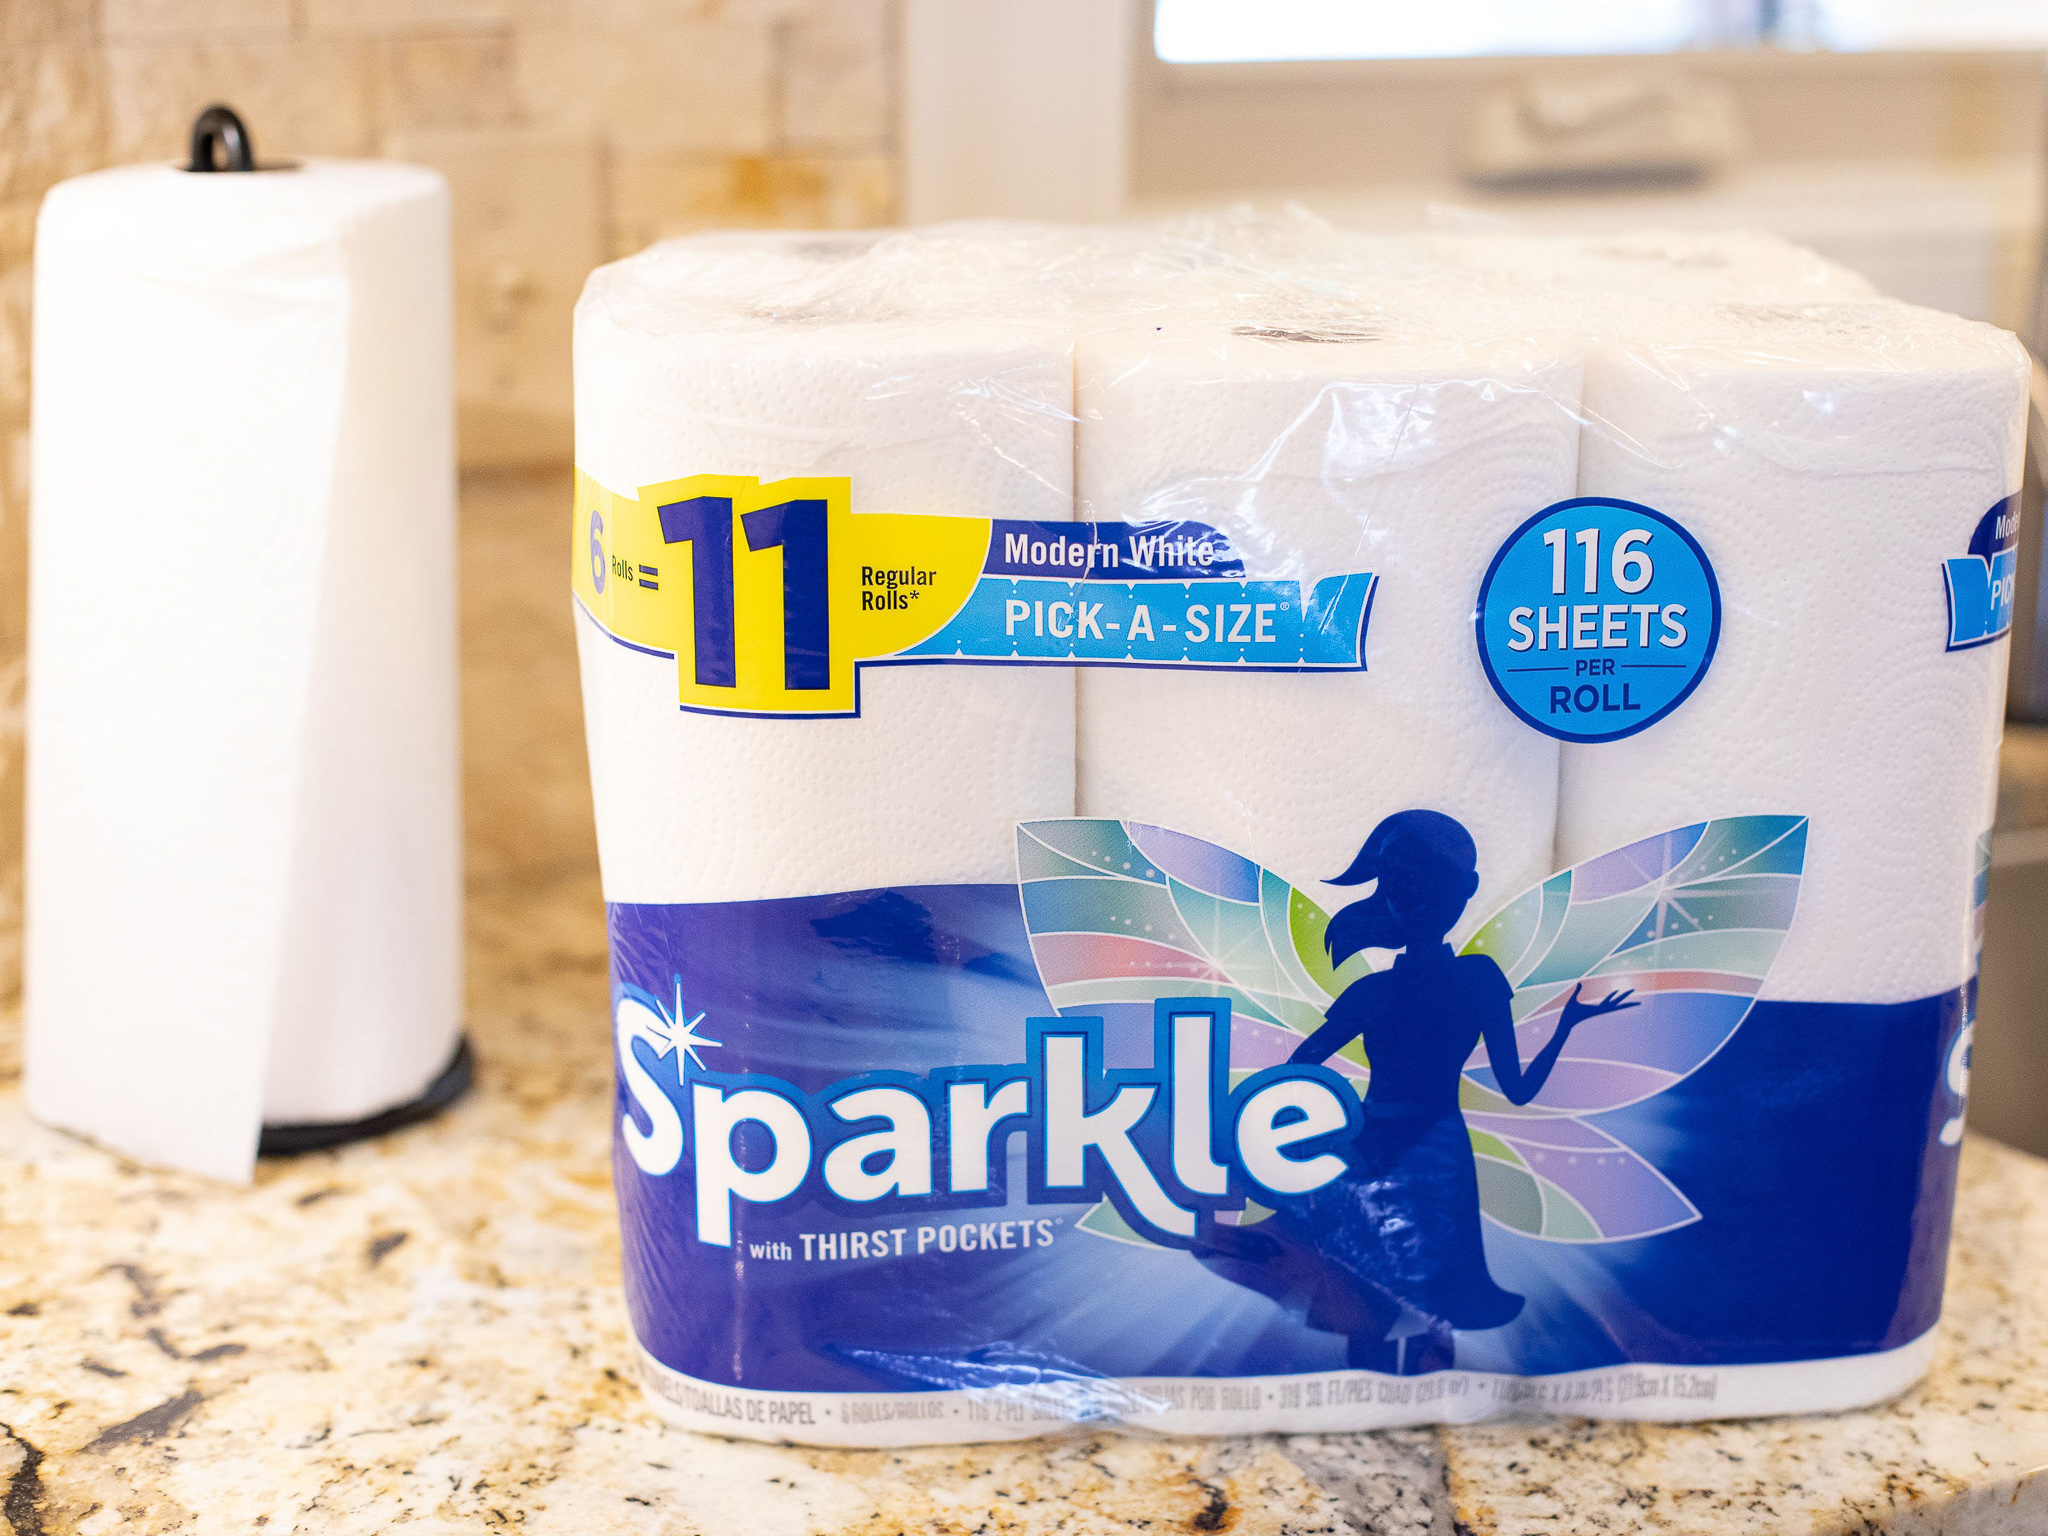 Sparkle Paper Towels Just $4 At Publix – Half Price!